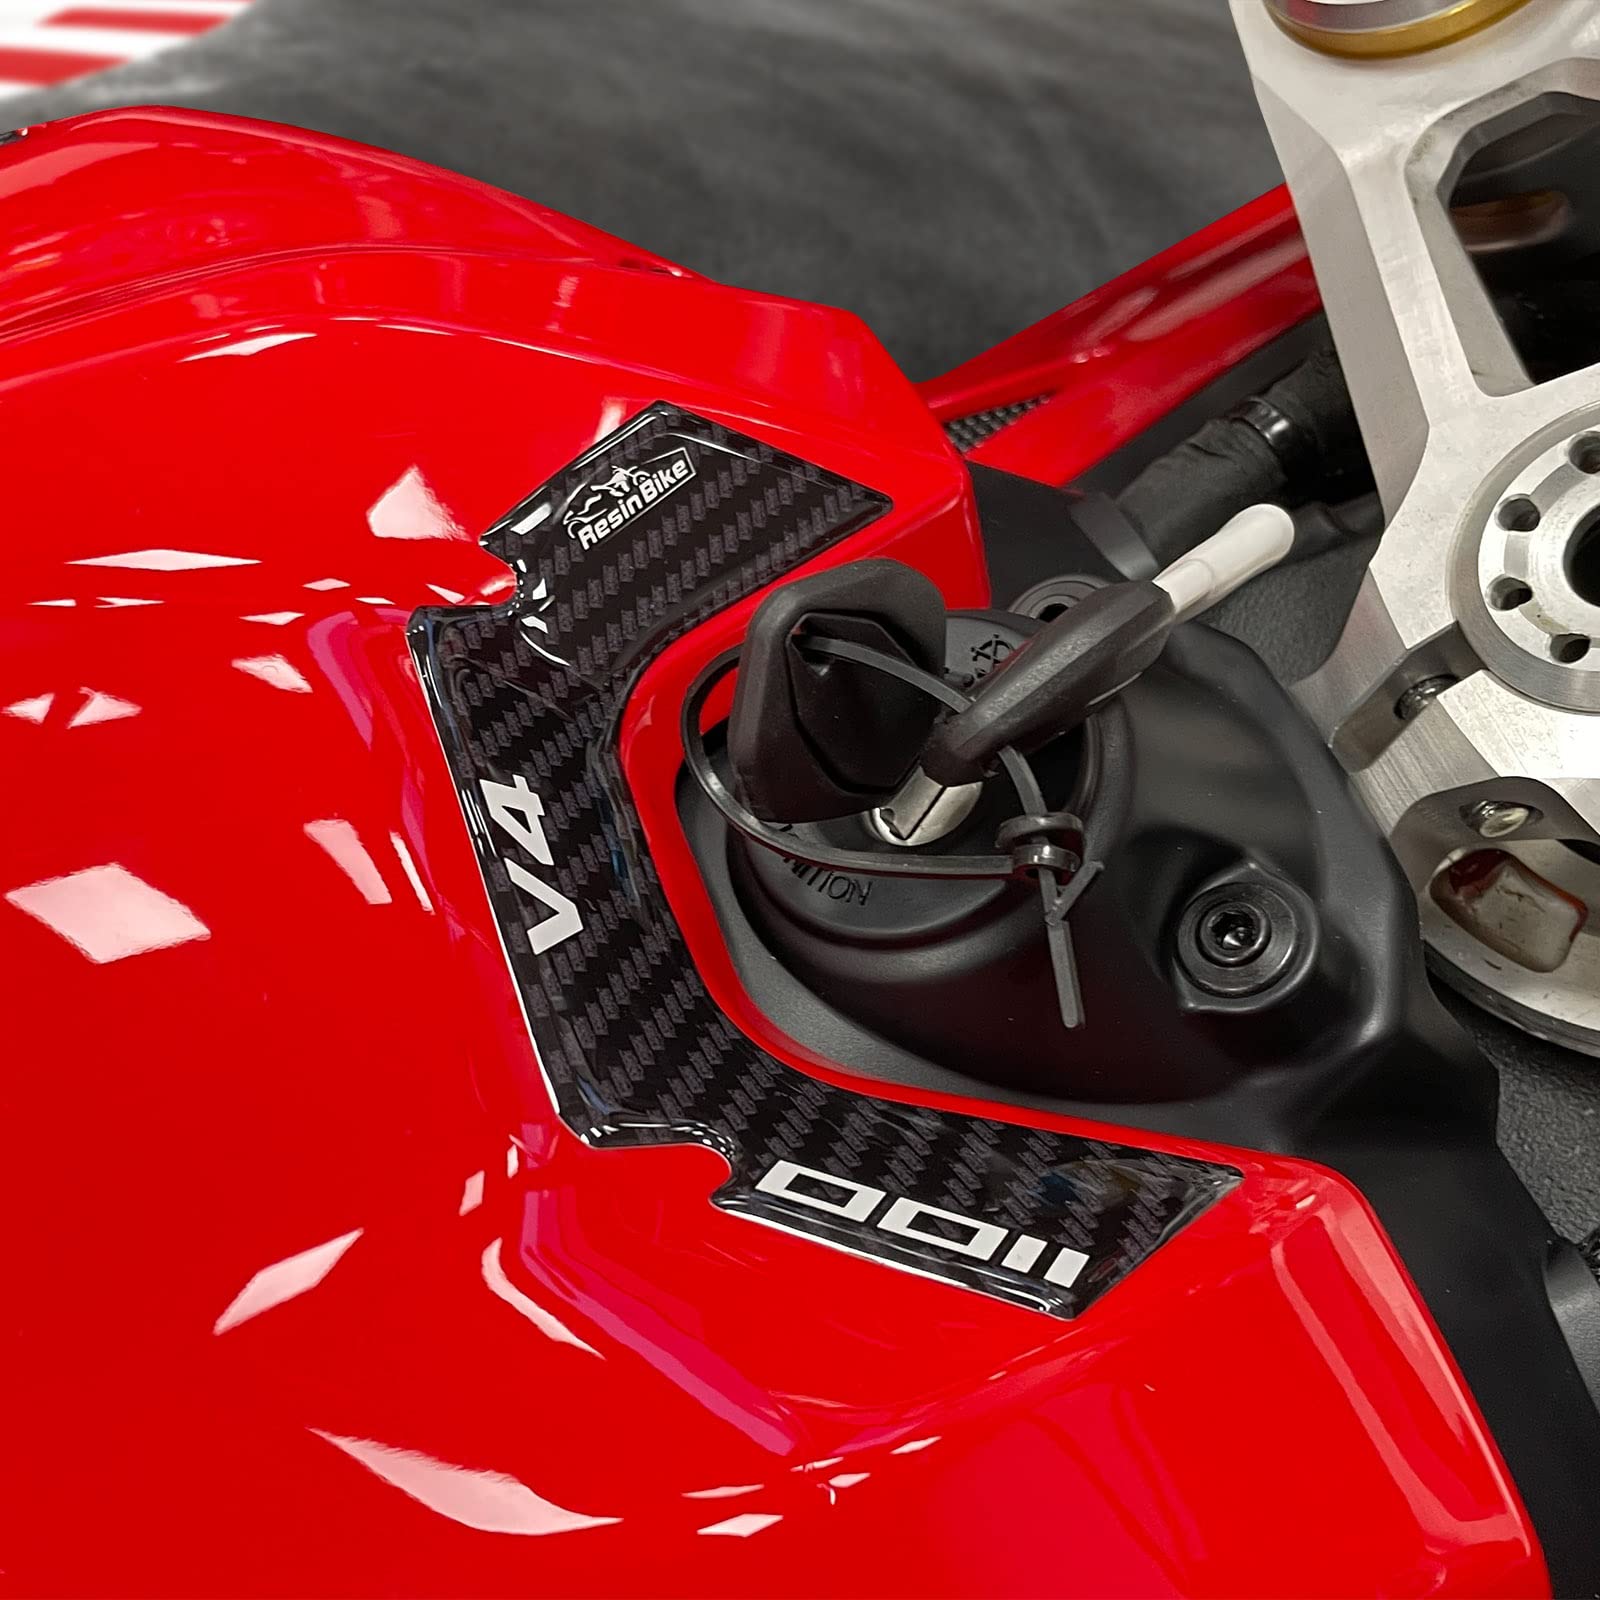 Resin Bike Aufkleber für Motorrad Kompatibel mit Ducati Panigale V4 und V4S 2022. Schlüsselschutz vor Stößen und Kratzern. 3D-Harzklebstoff - Stickers - Made in Italy von Resin Bike